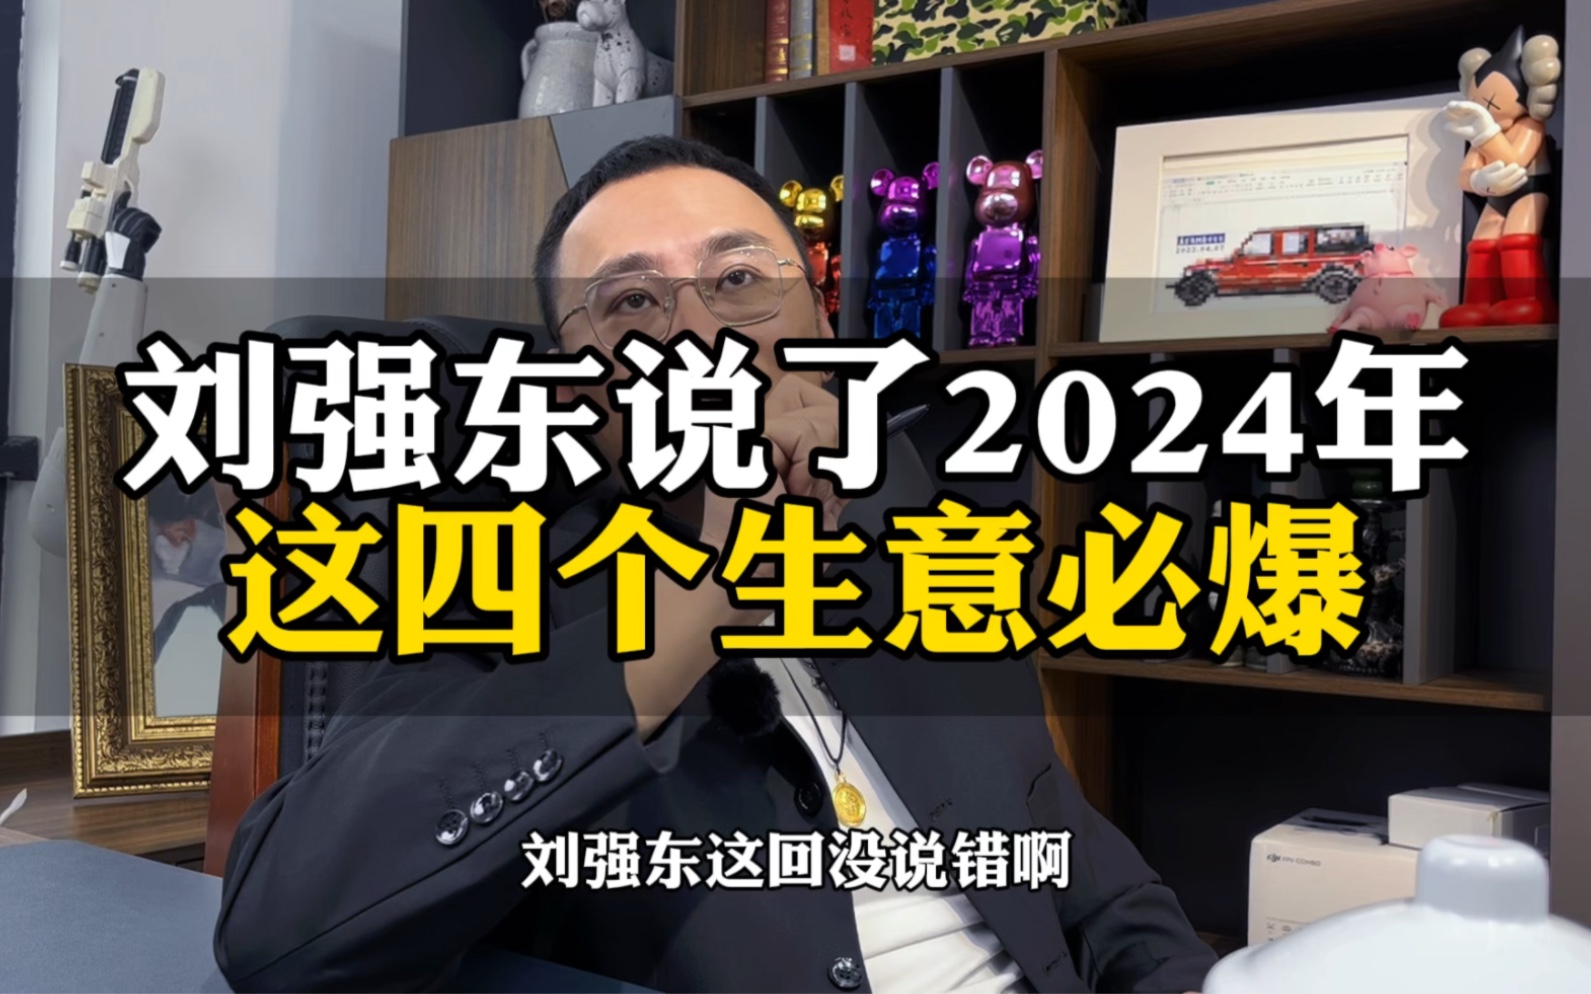 刘强东说了，2024年这四个生意必爆 #创业分享 #商业思维 #赚钱